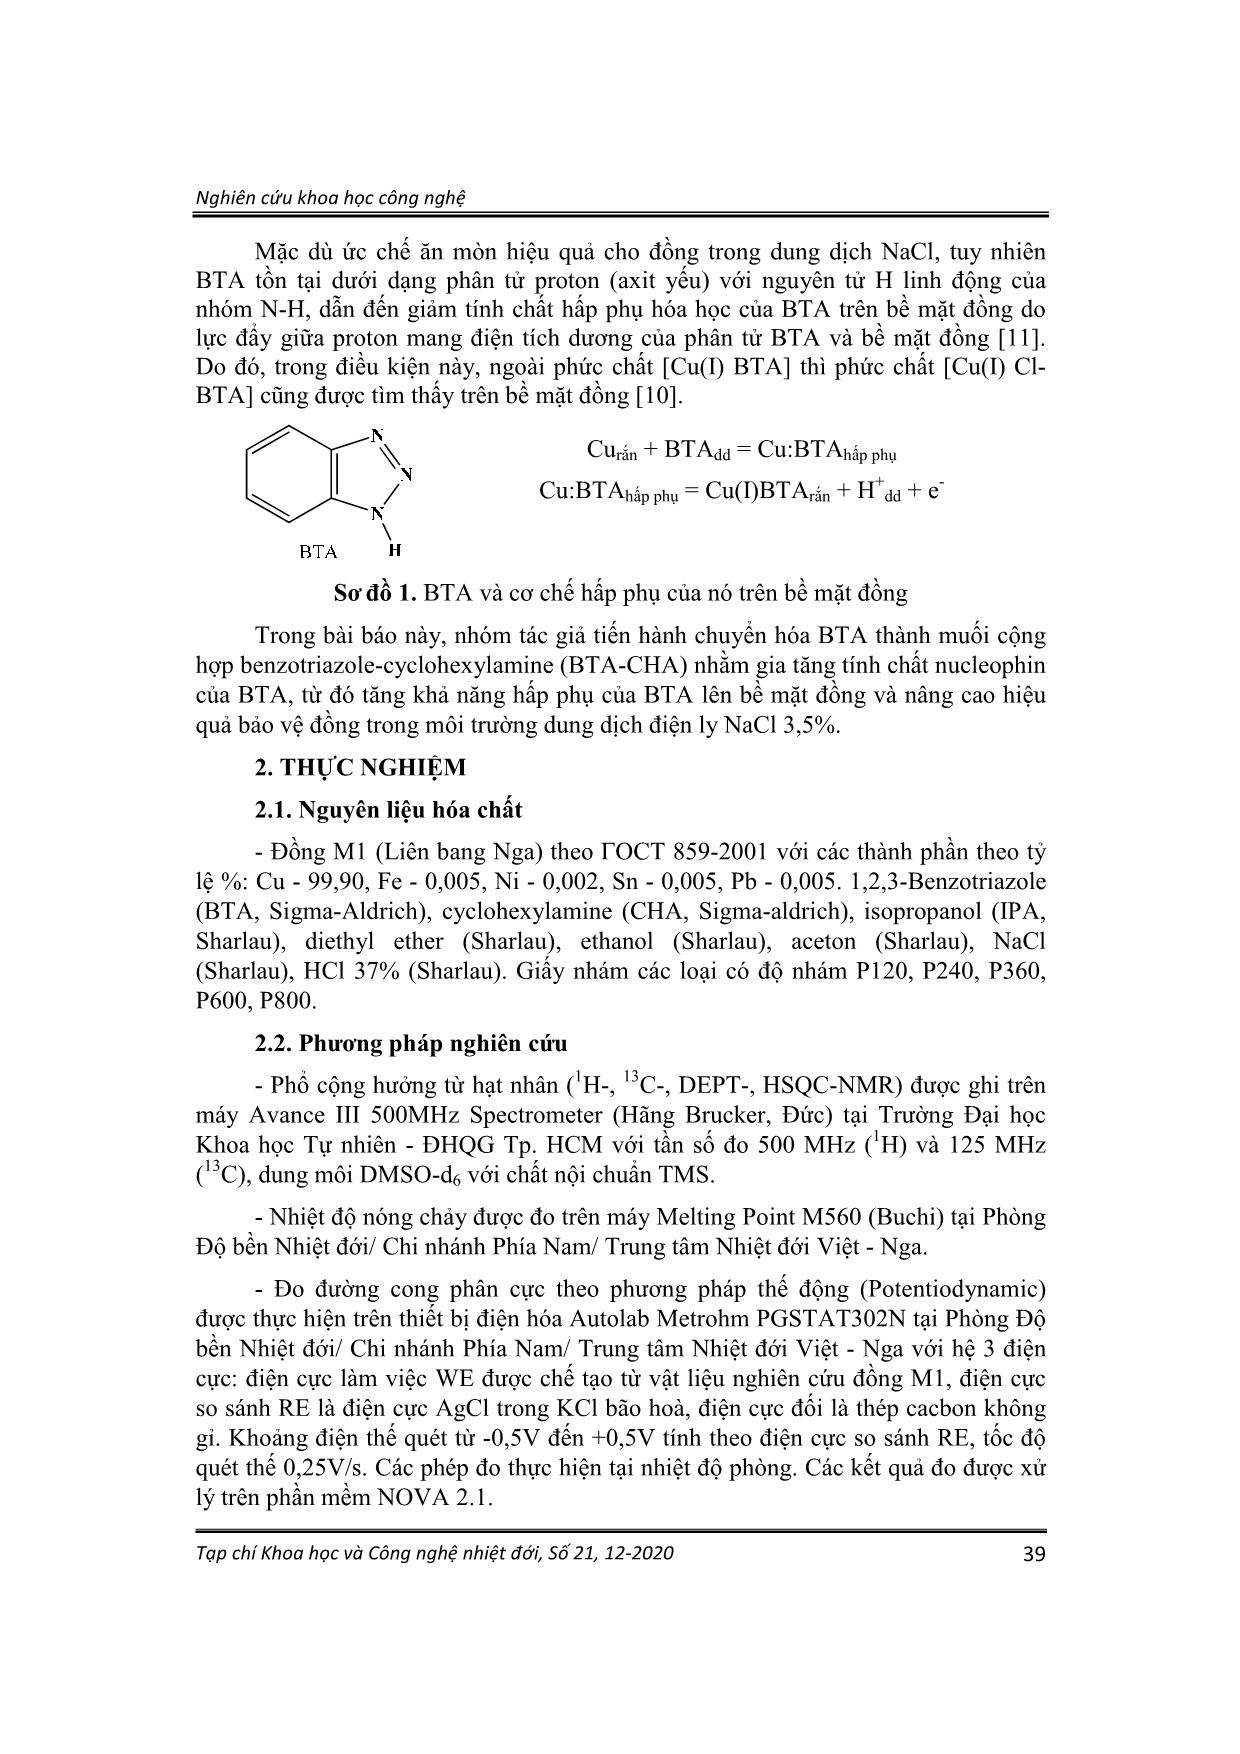 Tổng hợp và hiệu quả ức chế ăn mòn đồng của muối cộng hợp Benzotriazole-Cyclohexylamine trong dung dịch NaCl trang 2